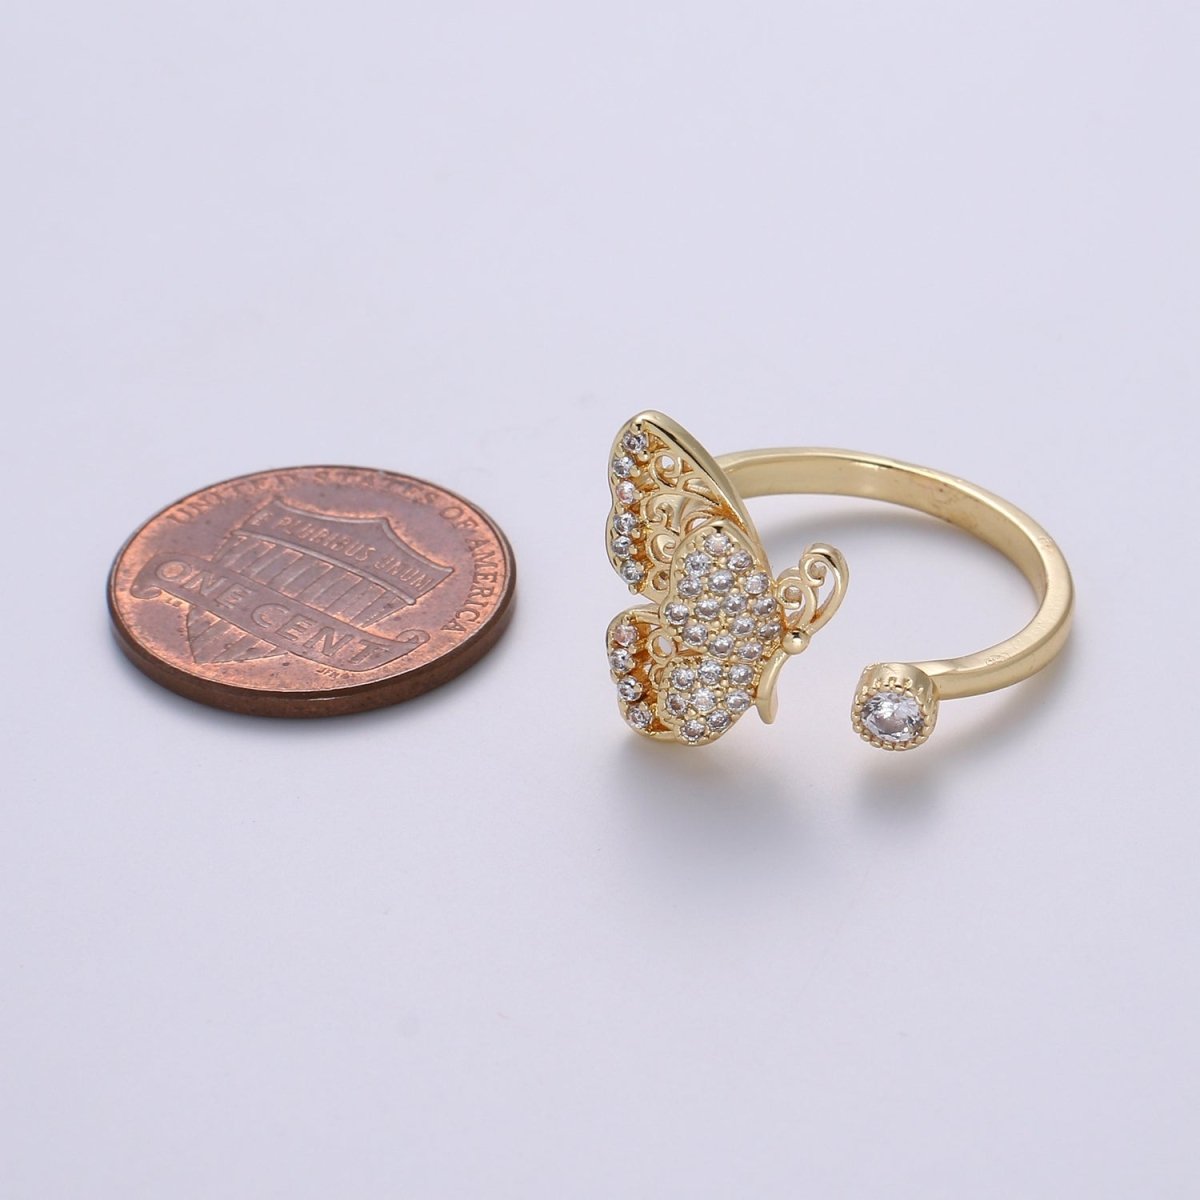 Elegant 18K Gold Filled Butterfly Adjustable Ring O-359 - DLUXCA